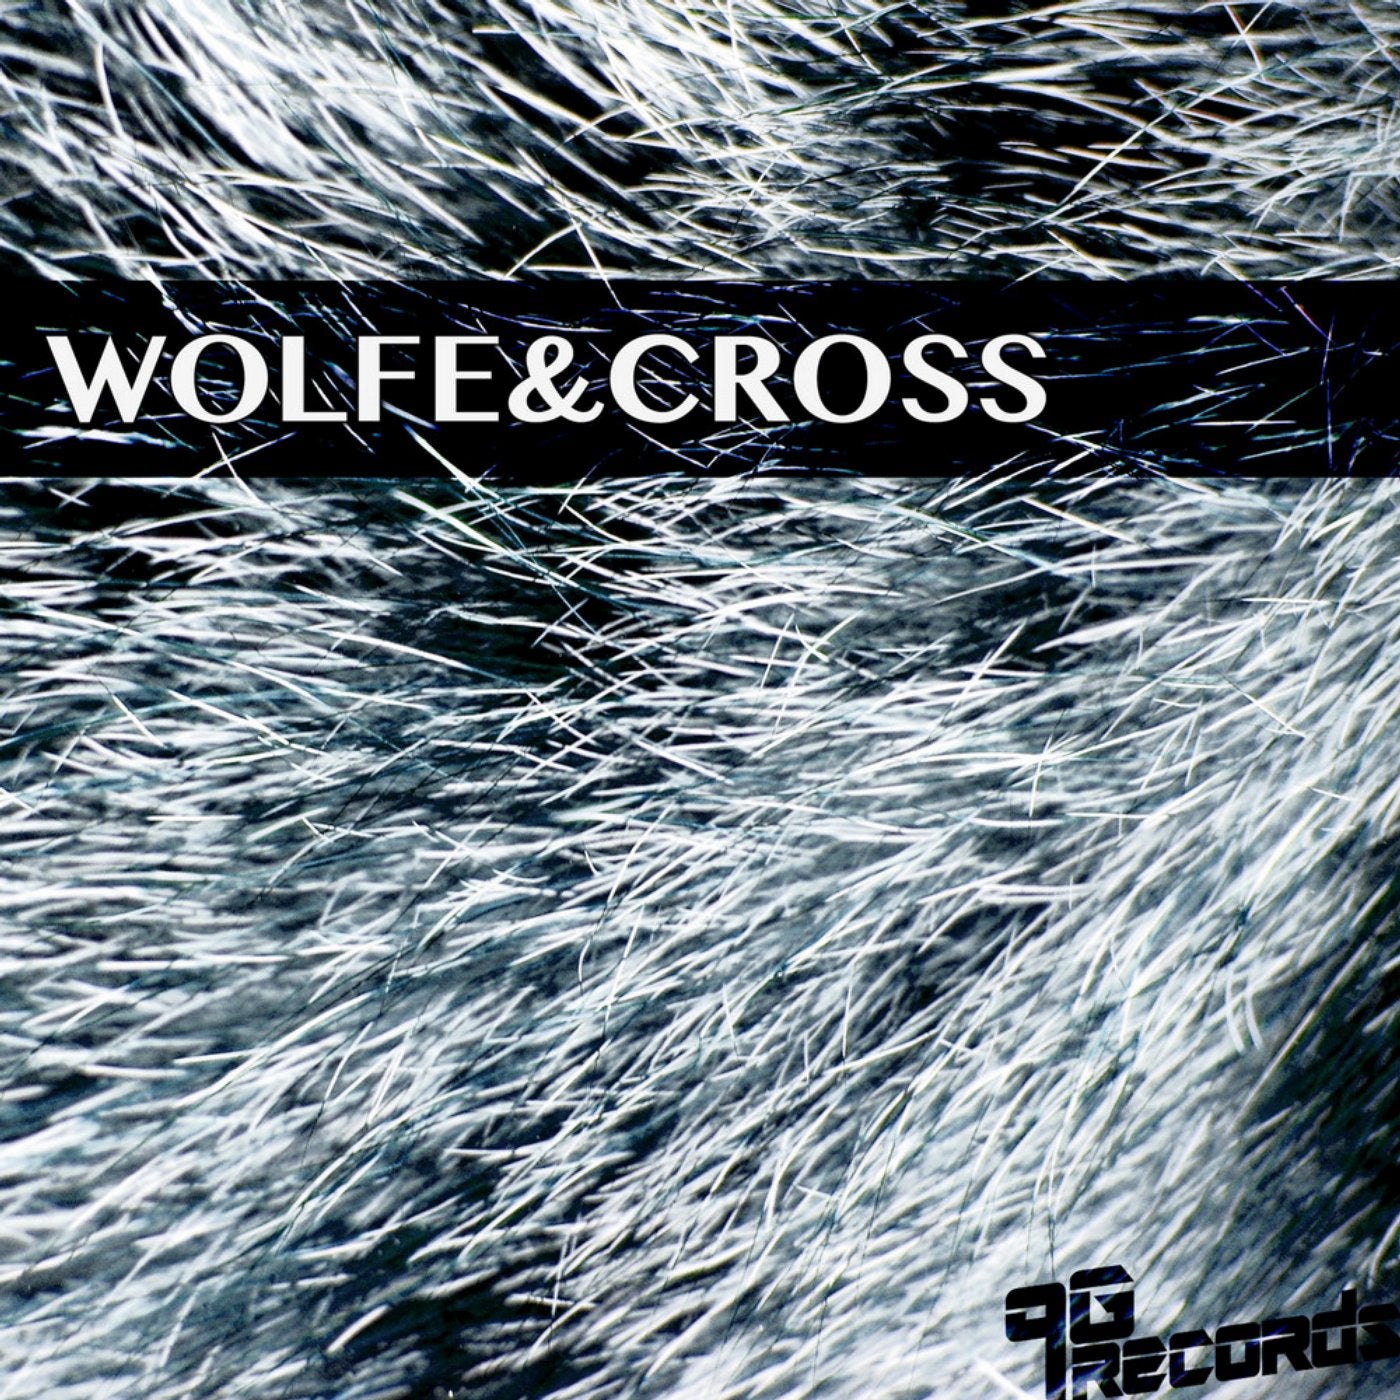 Wolfe&Cross